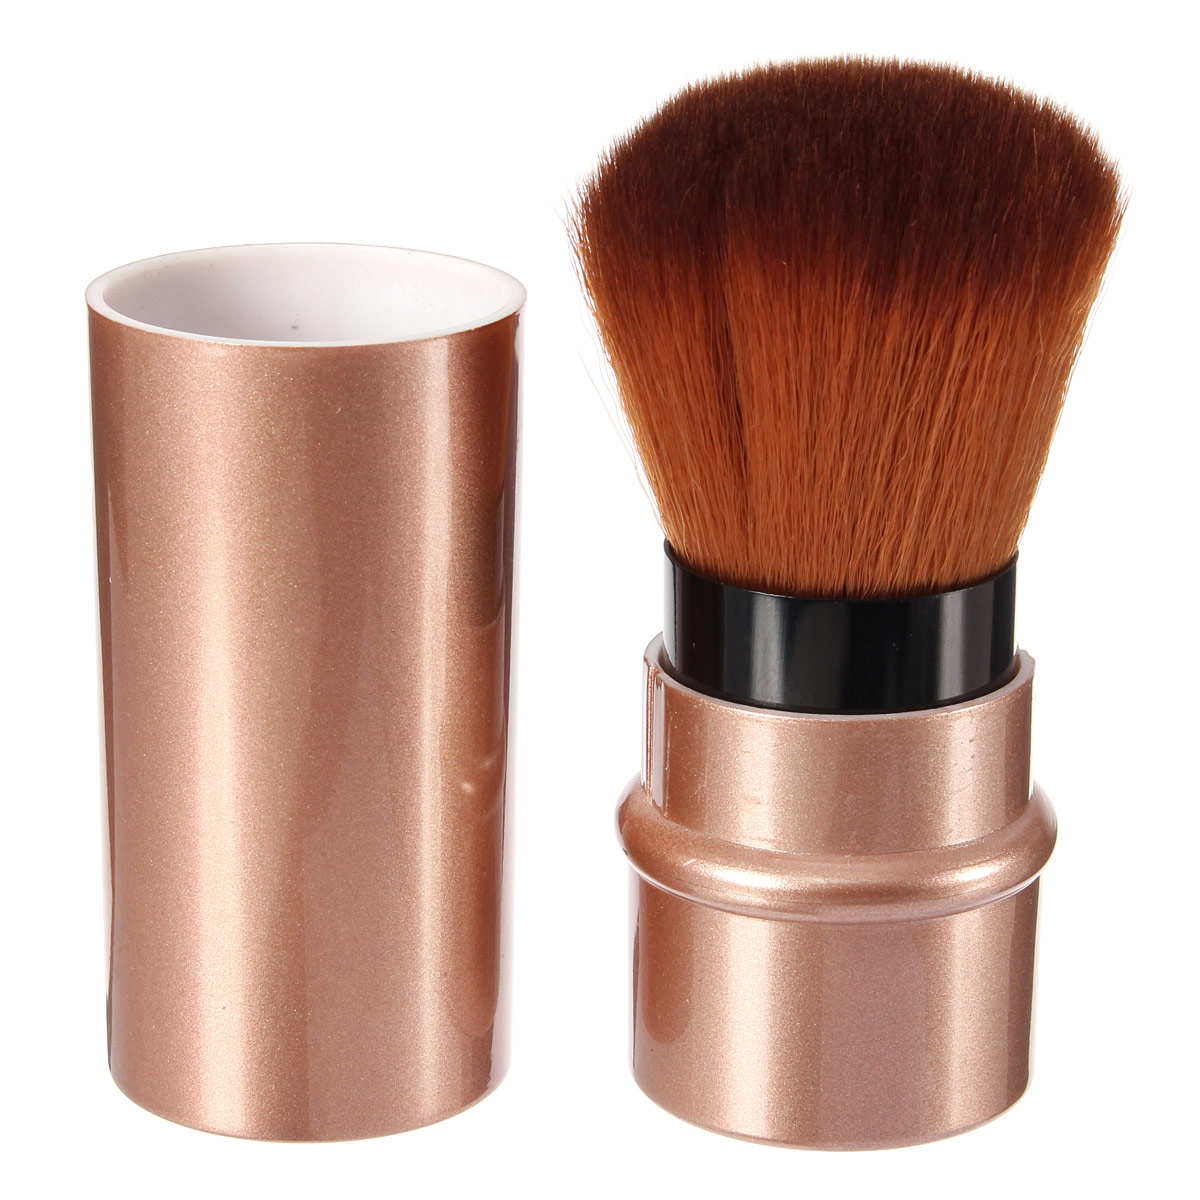 

Mini Soft Makeup Brush Powder Blush Cosmetic Blusher Portable